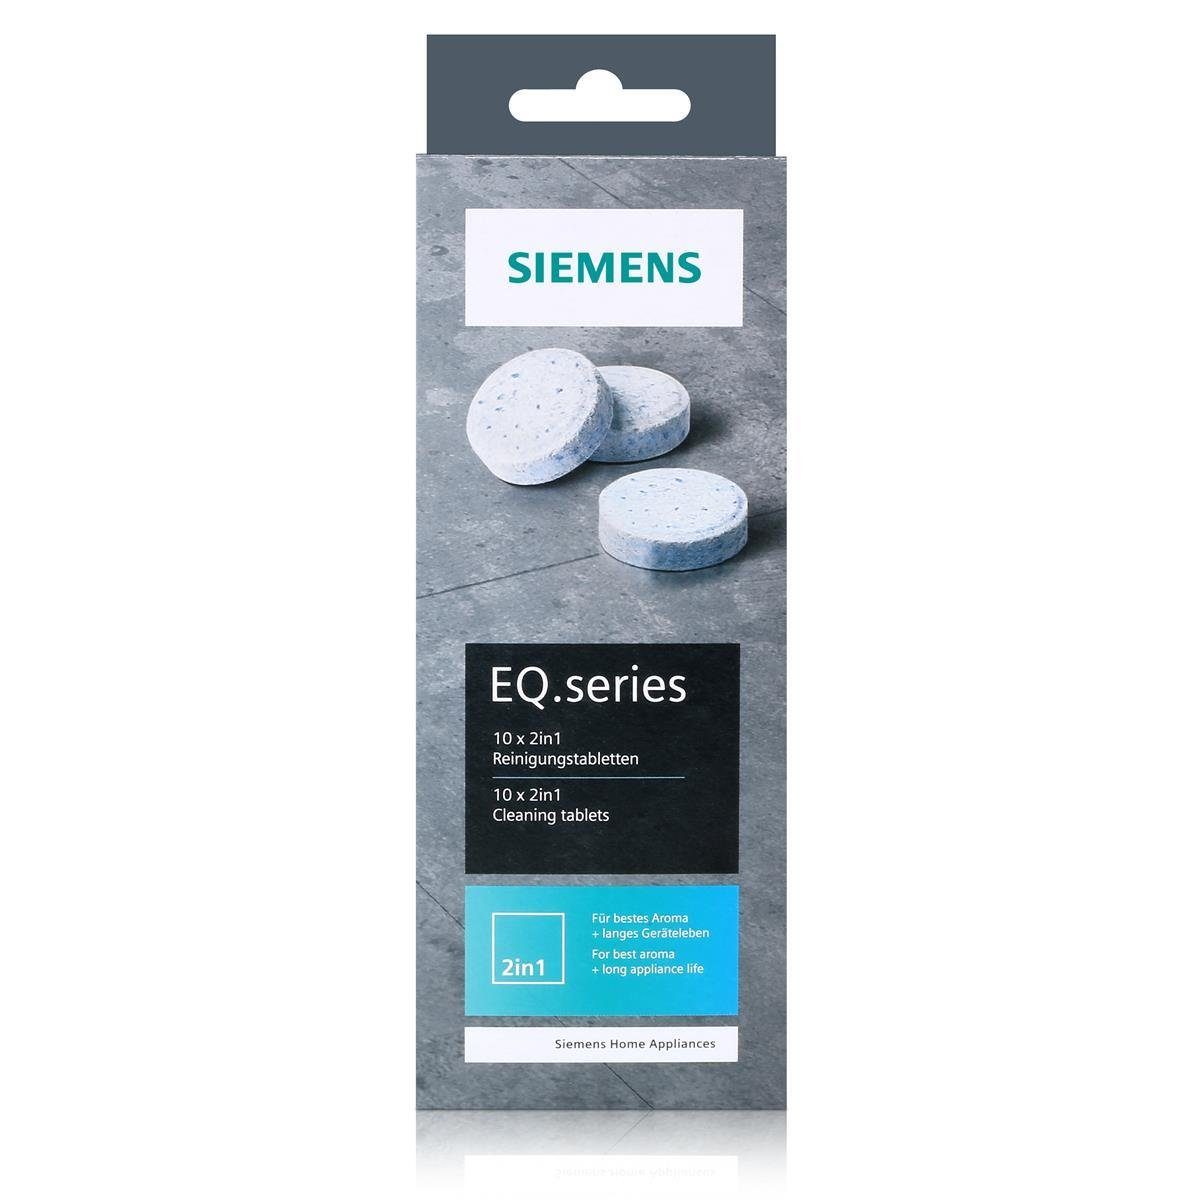 Reinigungstabletten TZ80001A Für Reinigungstabletten EQ.series SIEMENS bestes Aroma 22g - Siemens